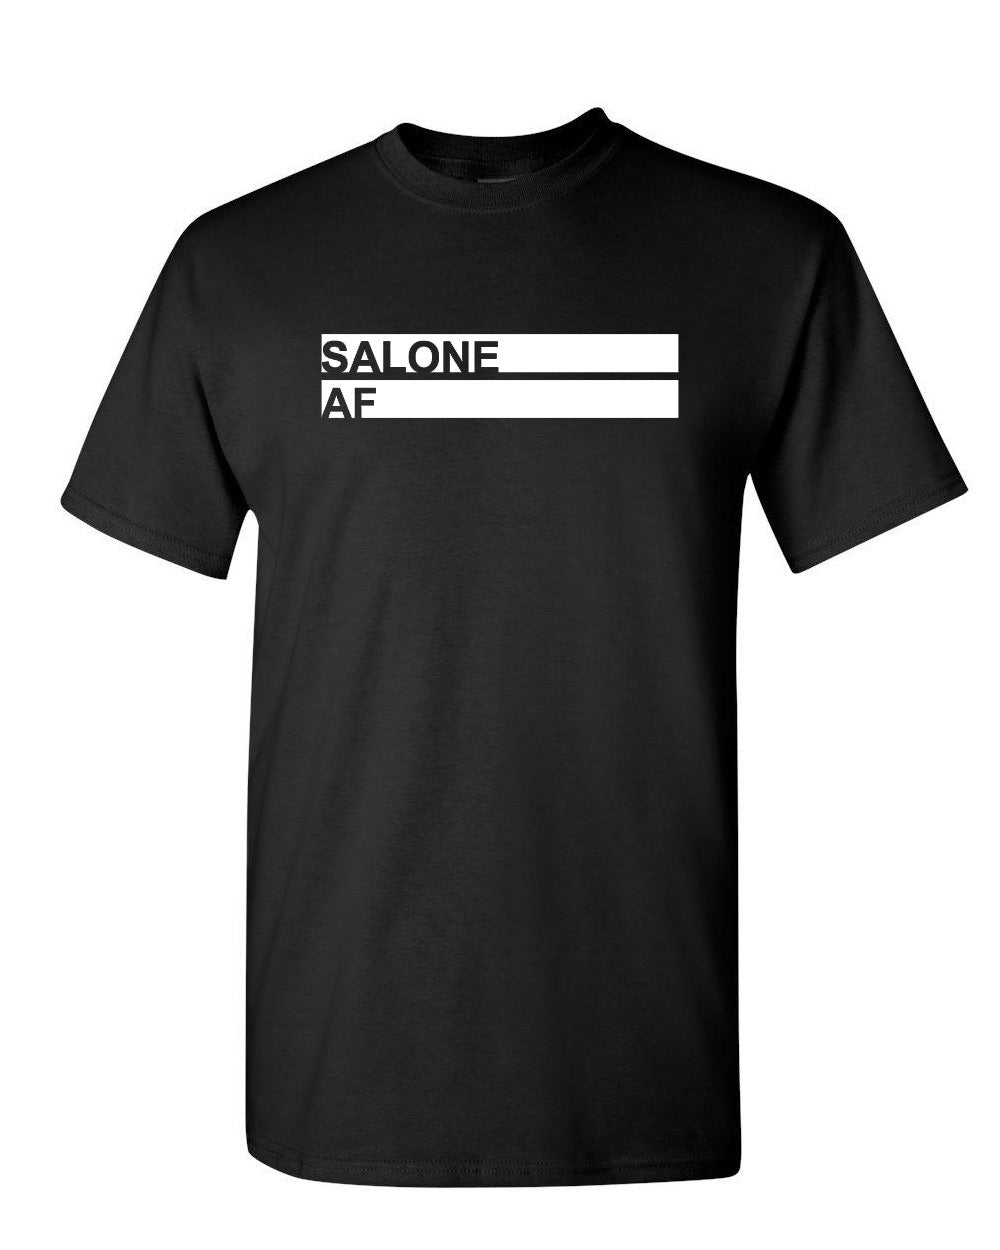 Salone AF T-shirt Black